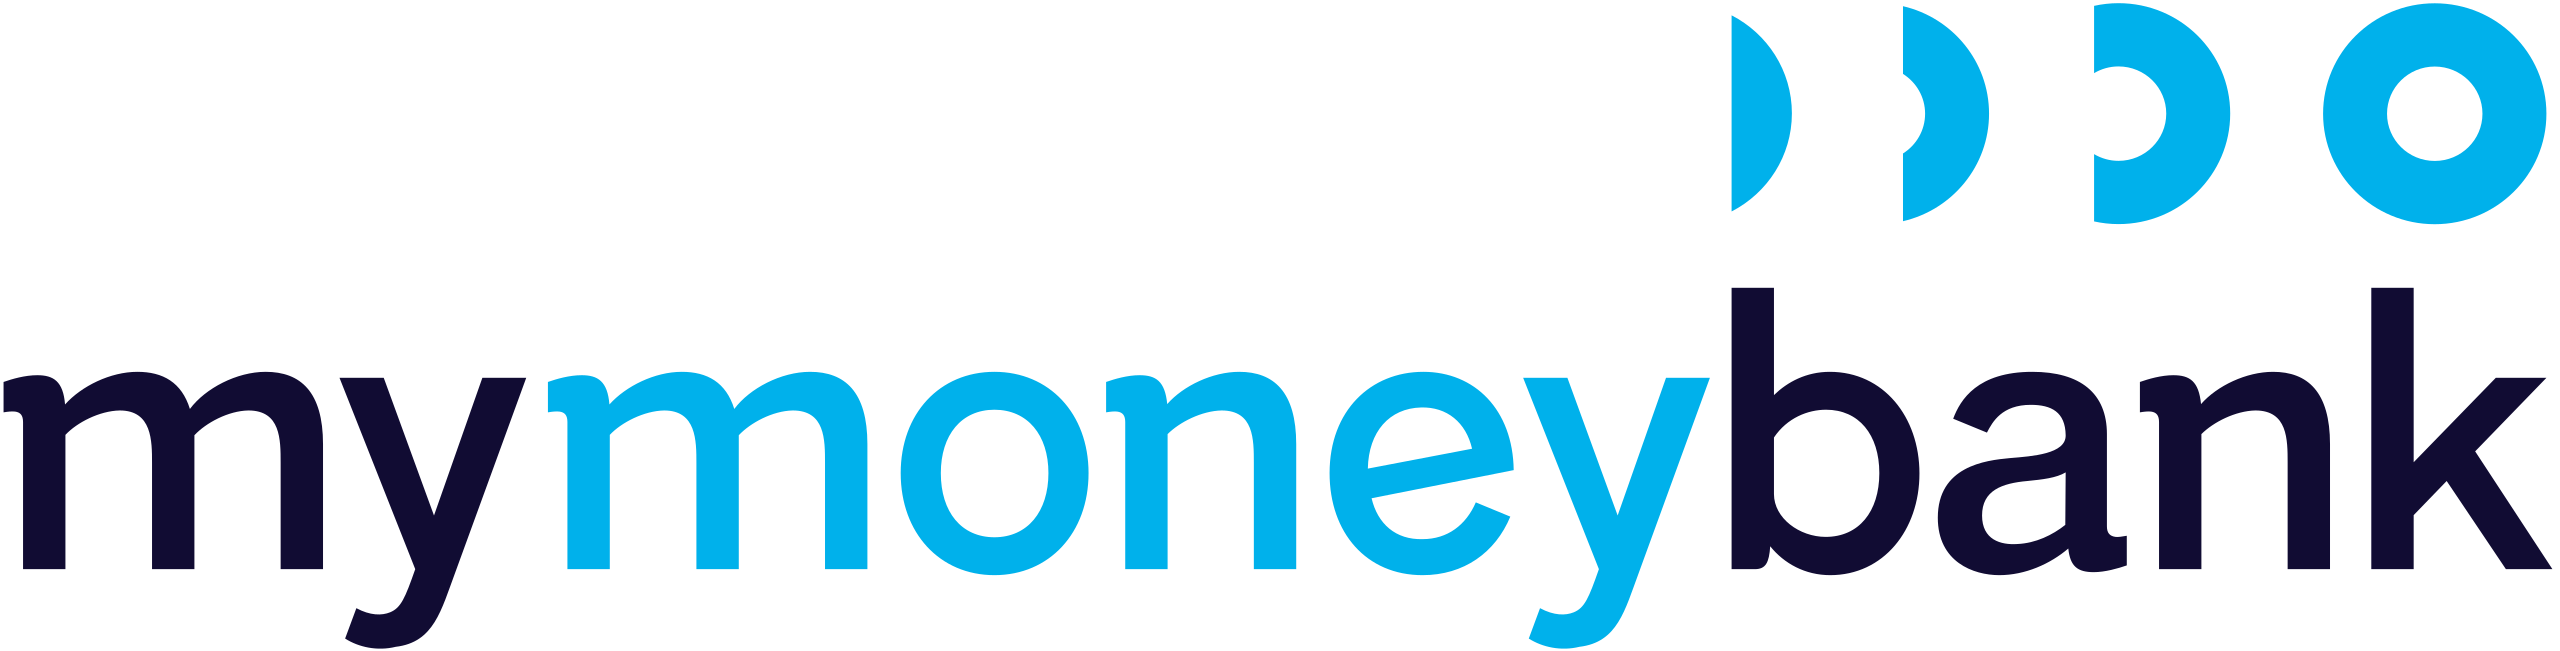 Logo de : My Money Bank 